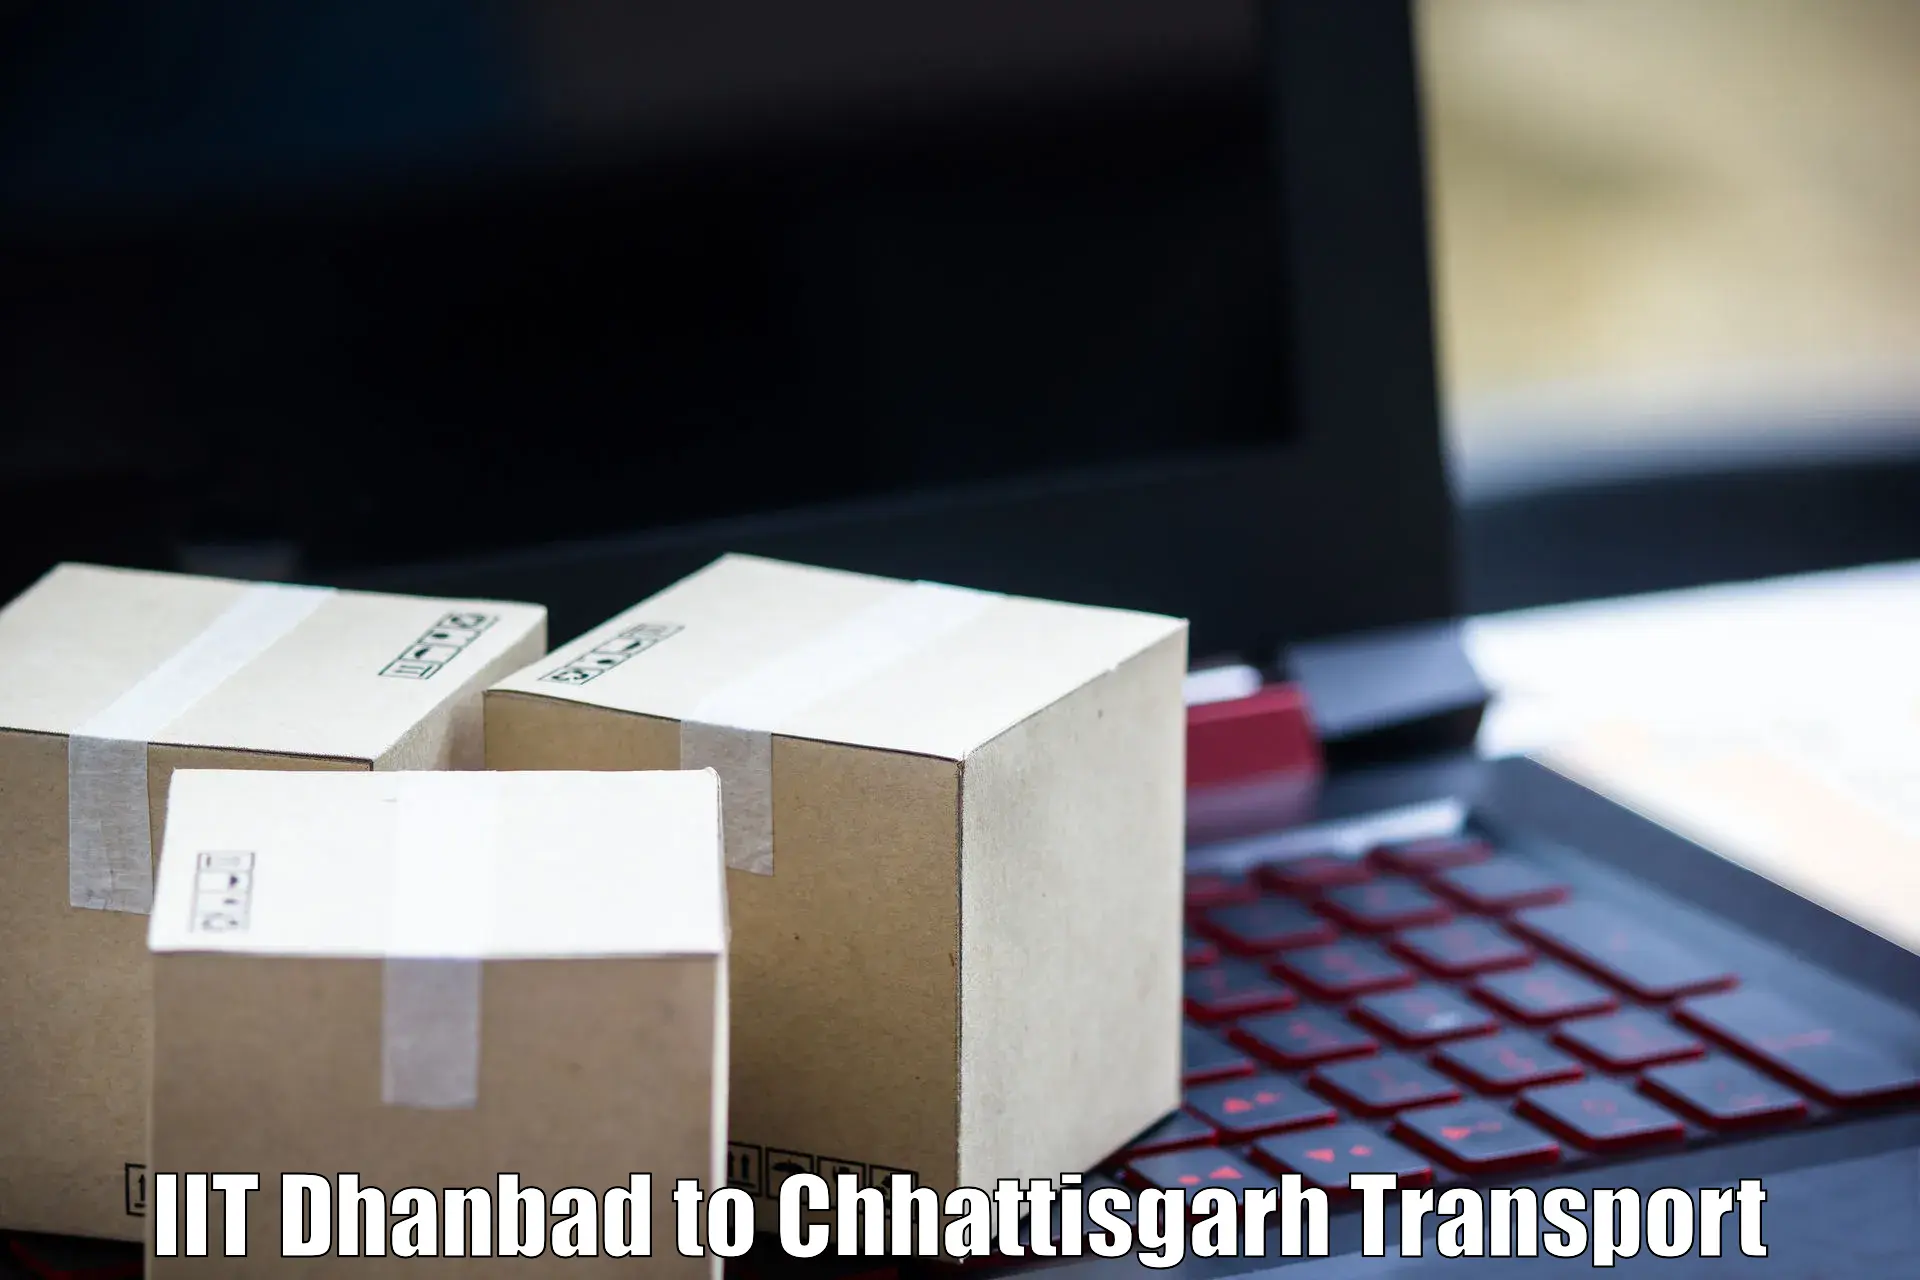 Lorry transport service IIT Dhanbad to Sakti